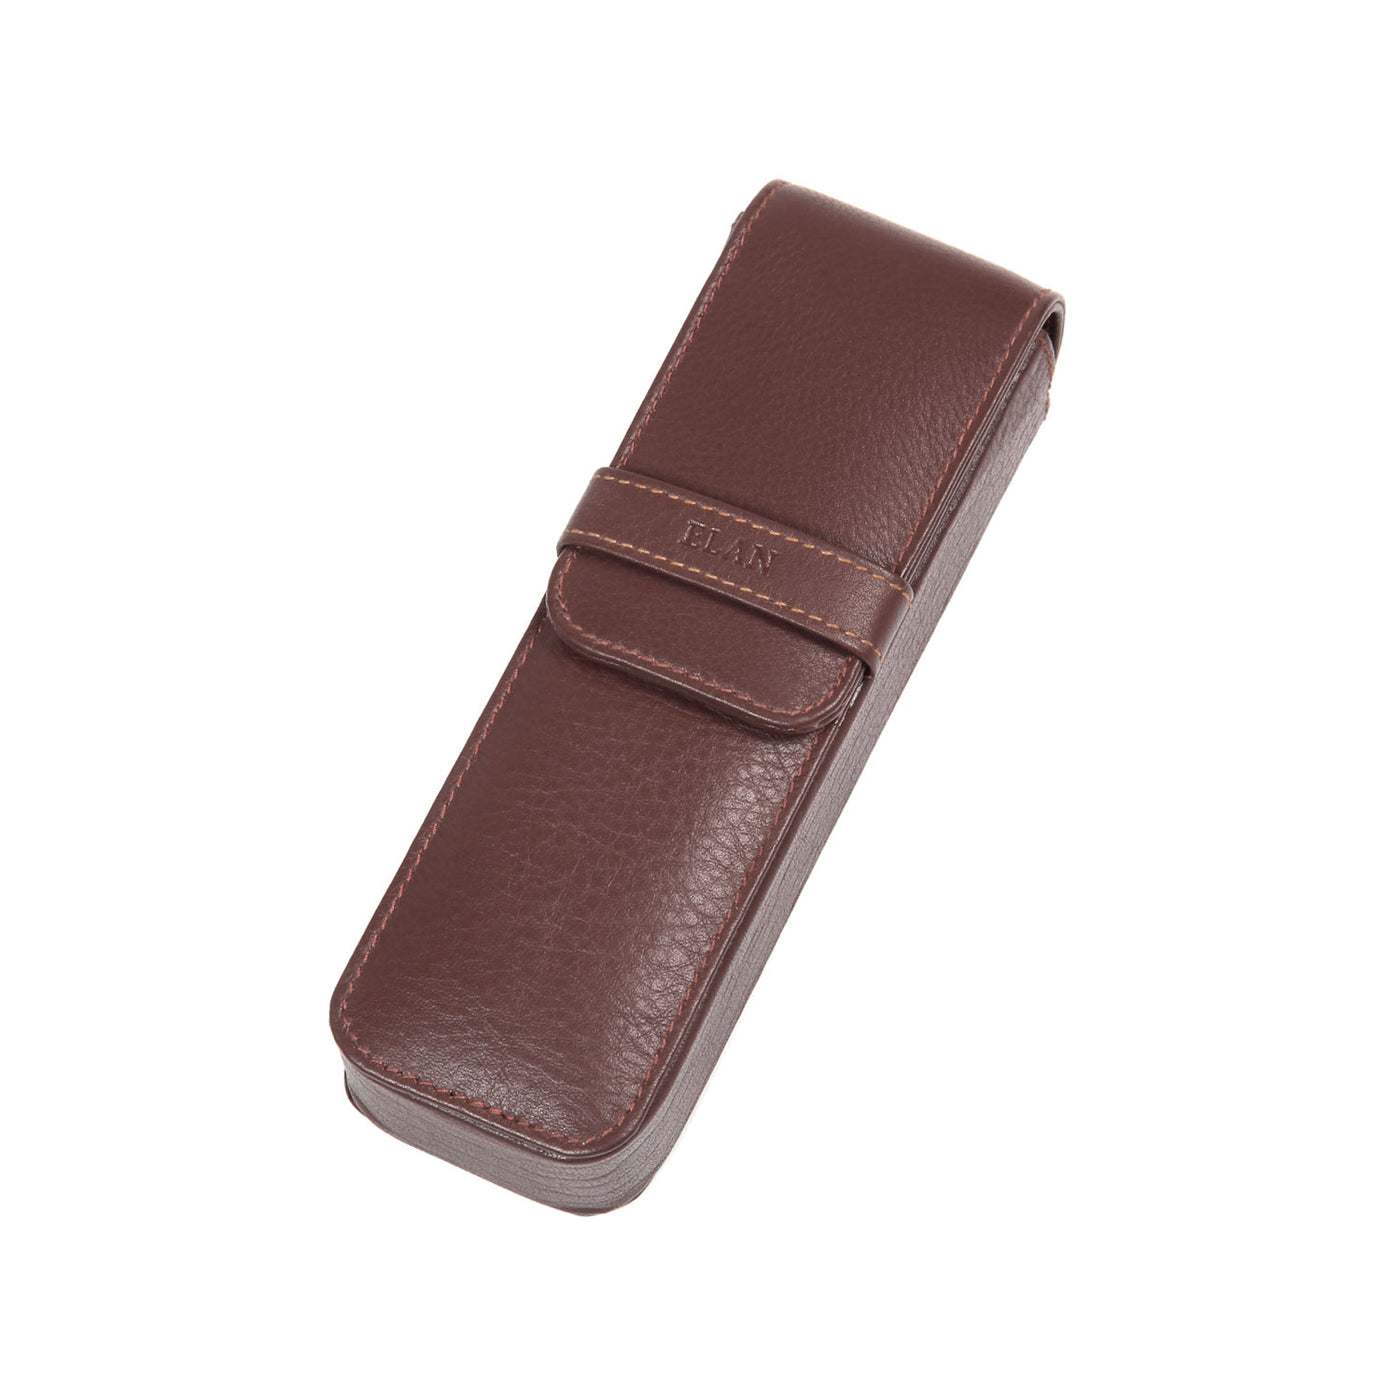 Elan Leather 2 Pen Holder - Brown 1